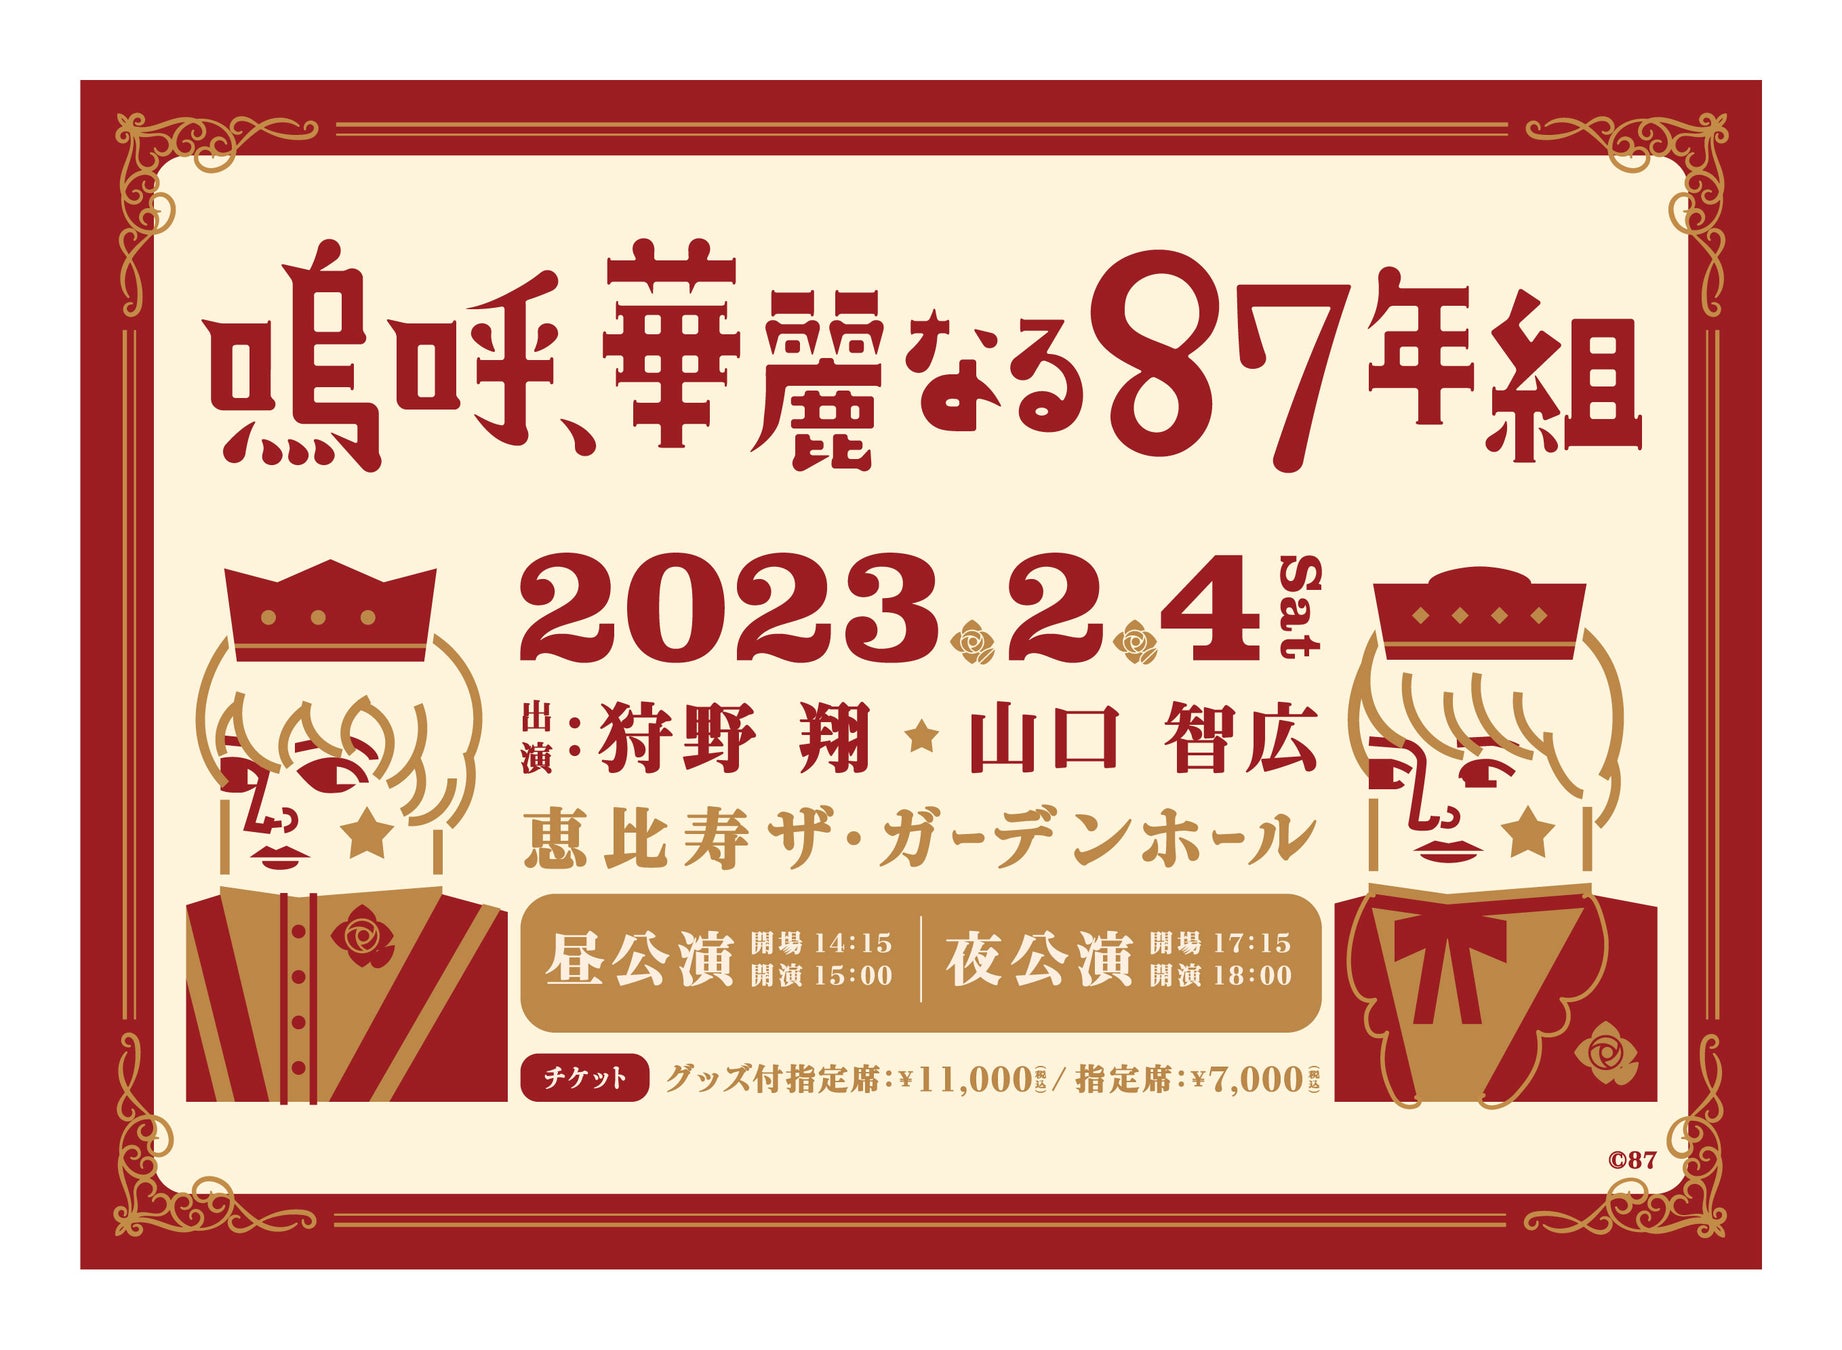 【ゲッターズ飯田の占い】一足先に2023年の運勢がすべてわかる特設ページを公開